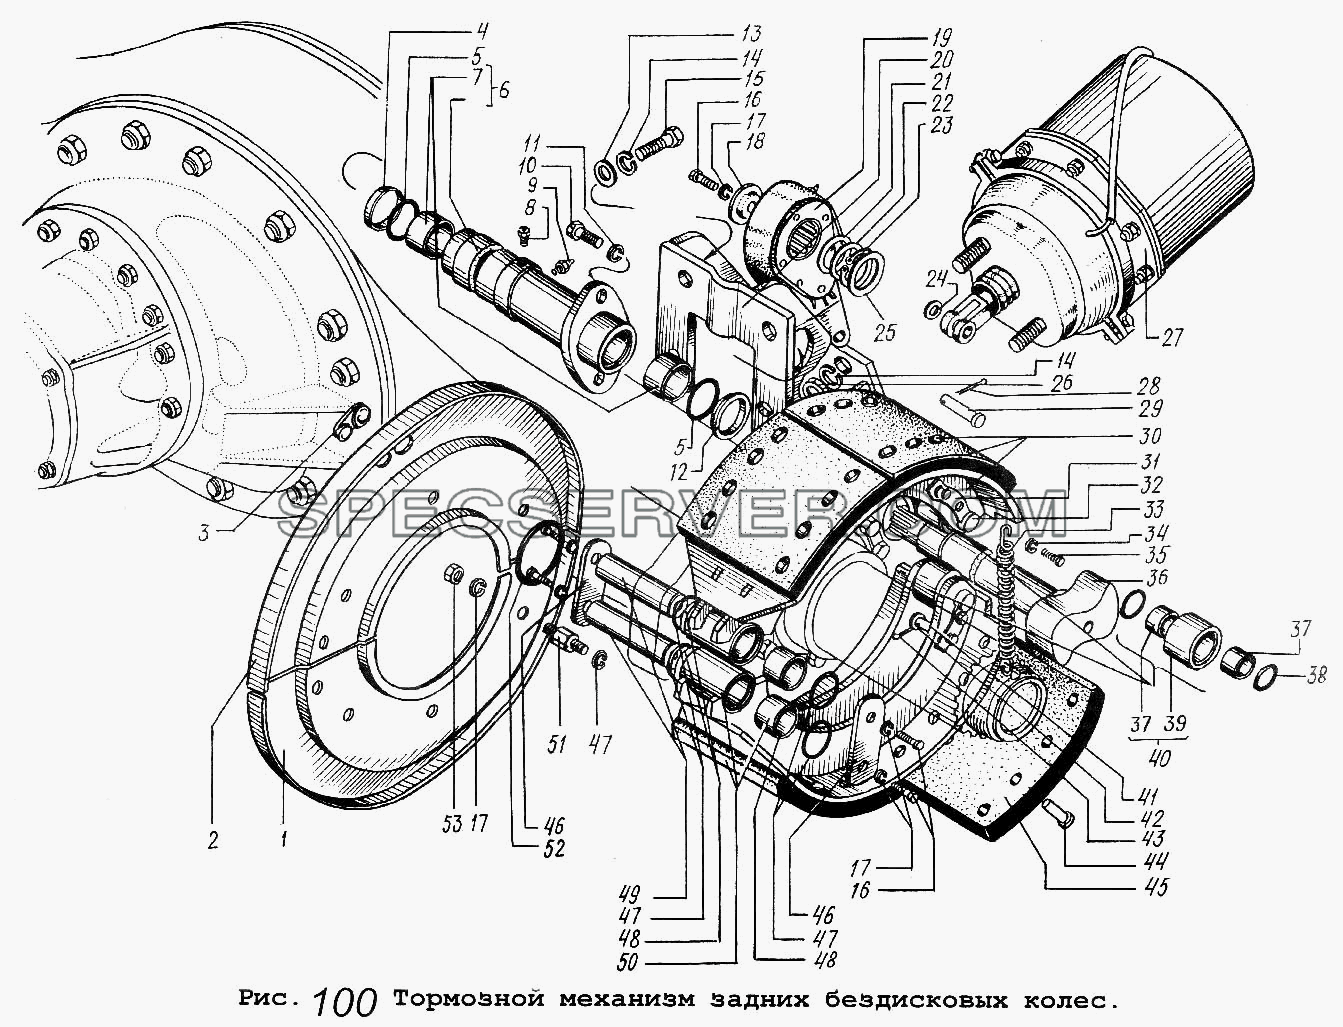 Тормозной механизм задних бездисковых колес для МАЗ-5337 (список запасных частей)